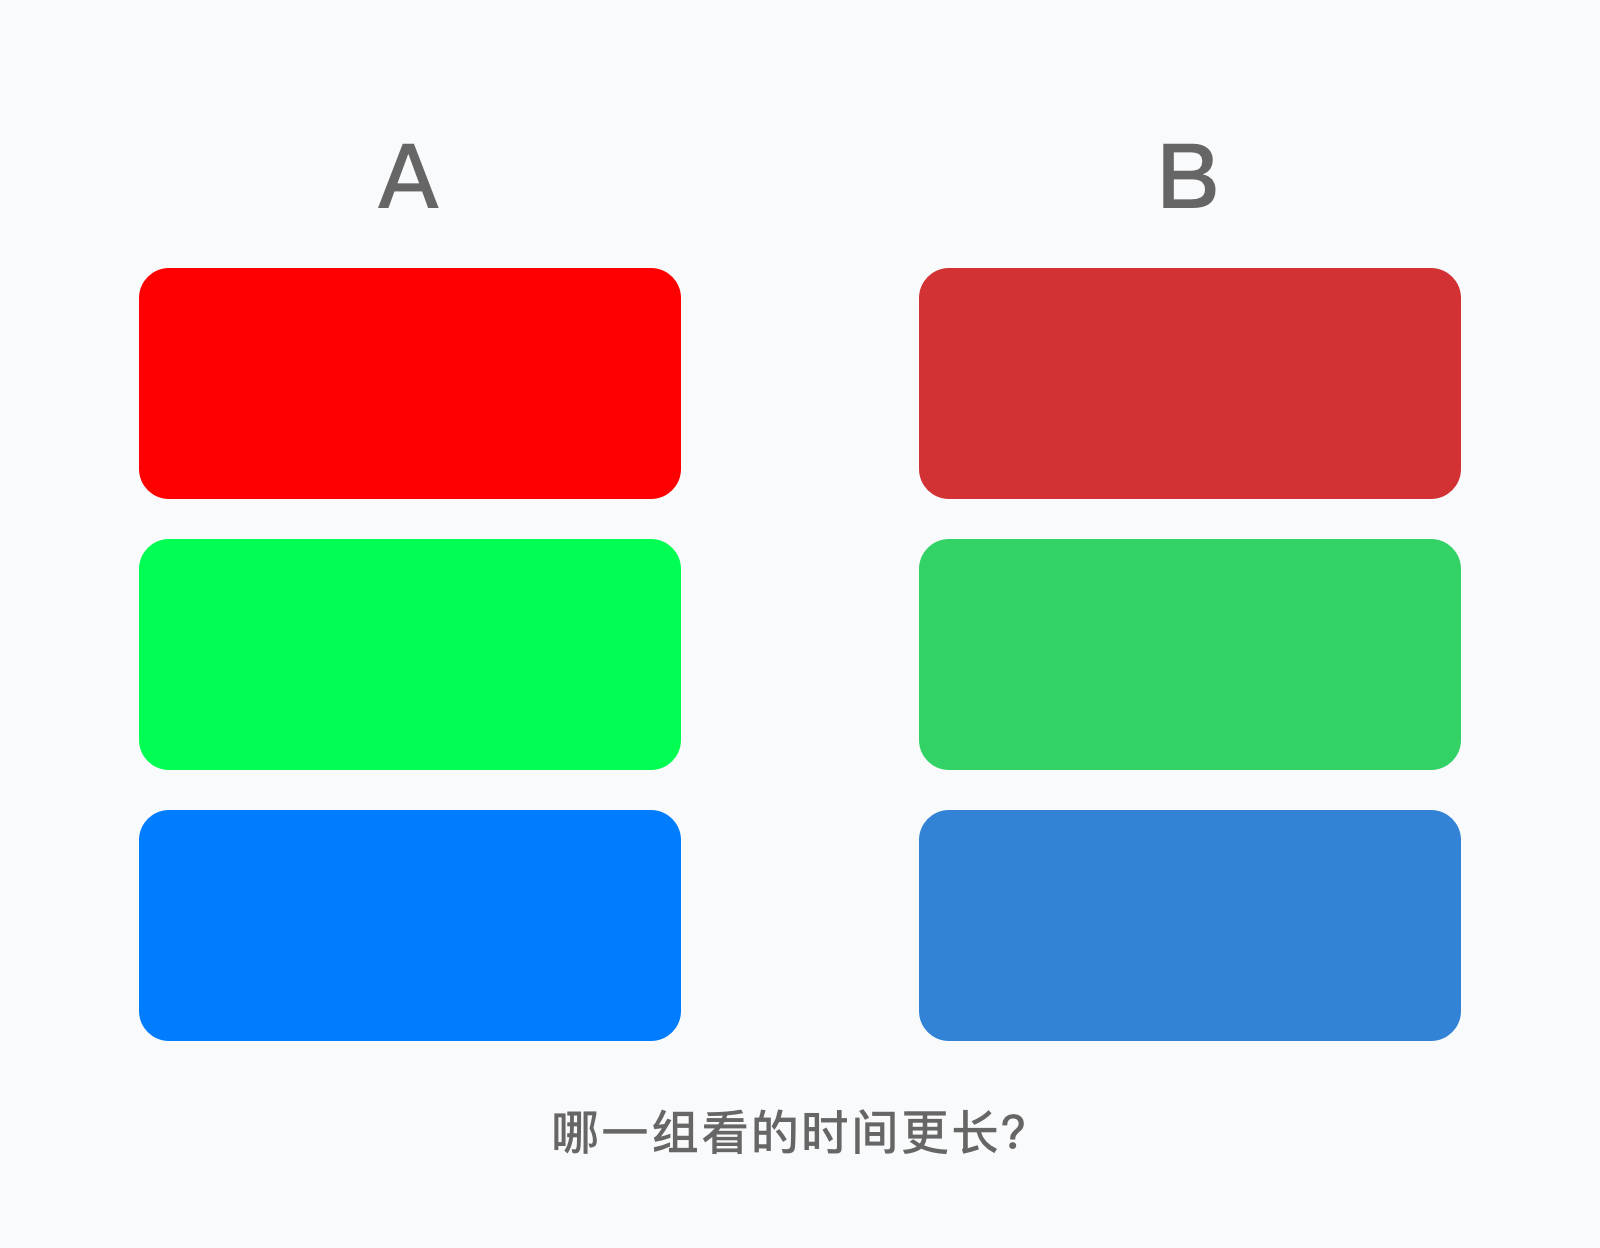 色相饱和度和亮度(明度)的定义和作用